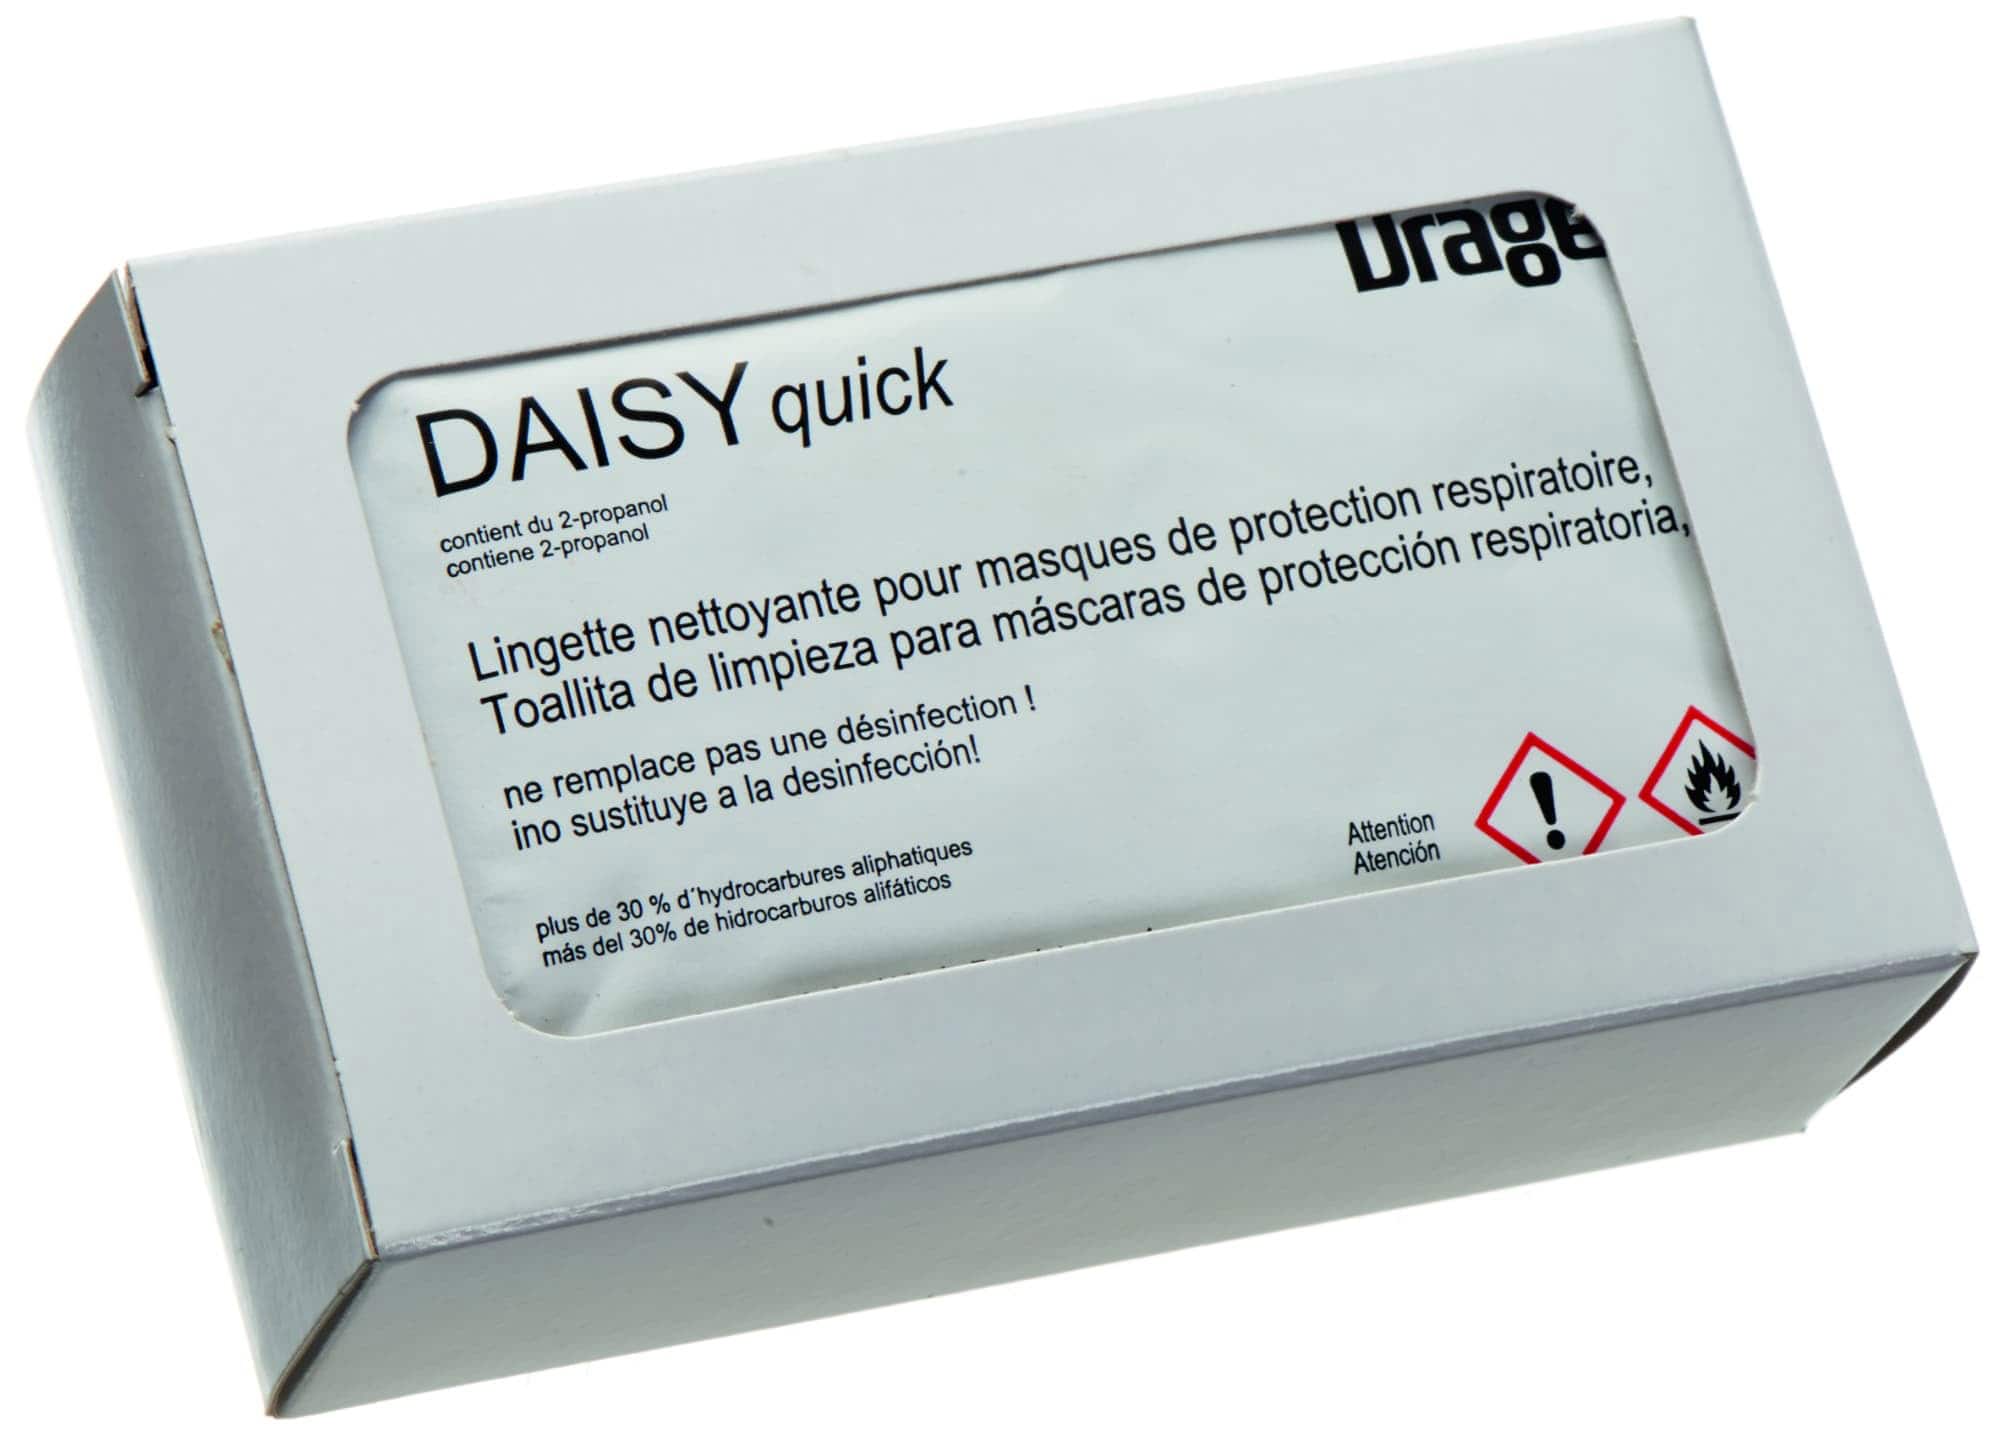 Dräger® DAISY quick Reinigungstuch R54134, 10 Stück pro Karton, Hygienisch Einzelverpackt, Desinfizierendes Reinigungstuch auf Propanolbasis, Universal Desinfektionstuch